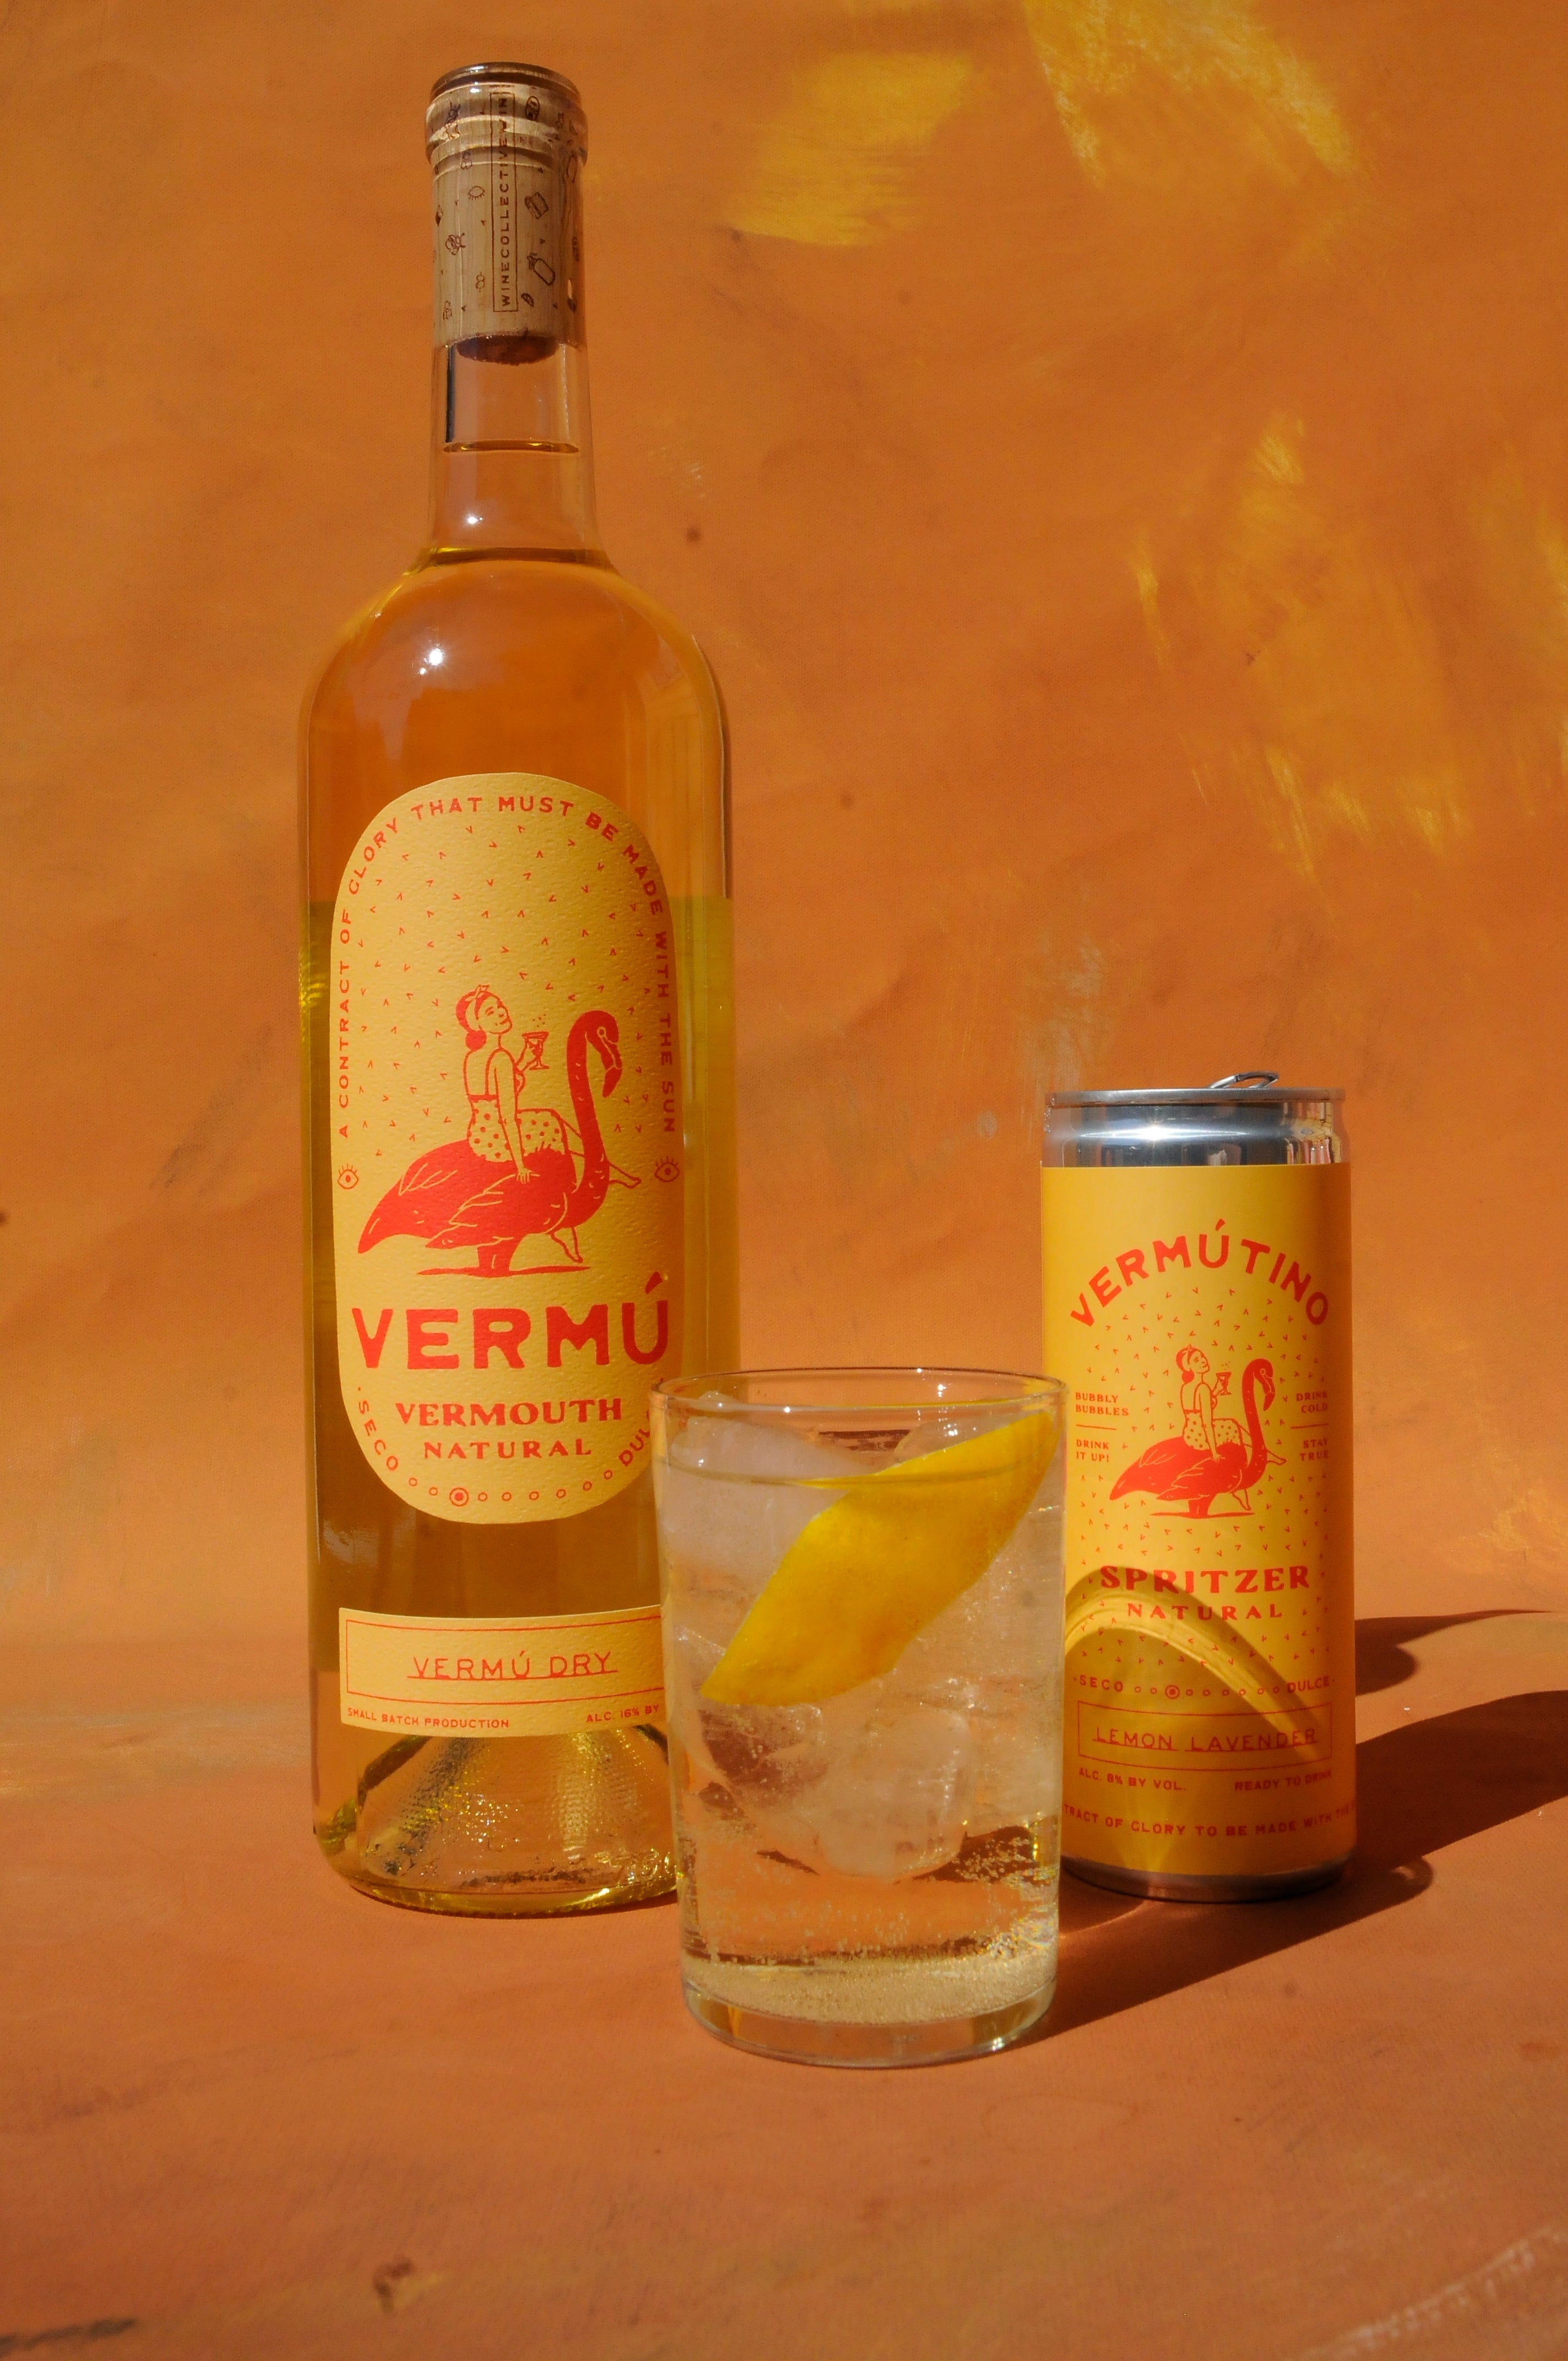 Vermú Dry Vermouth